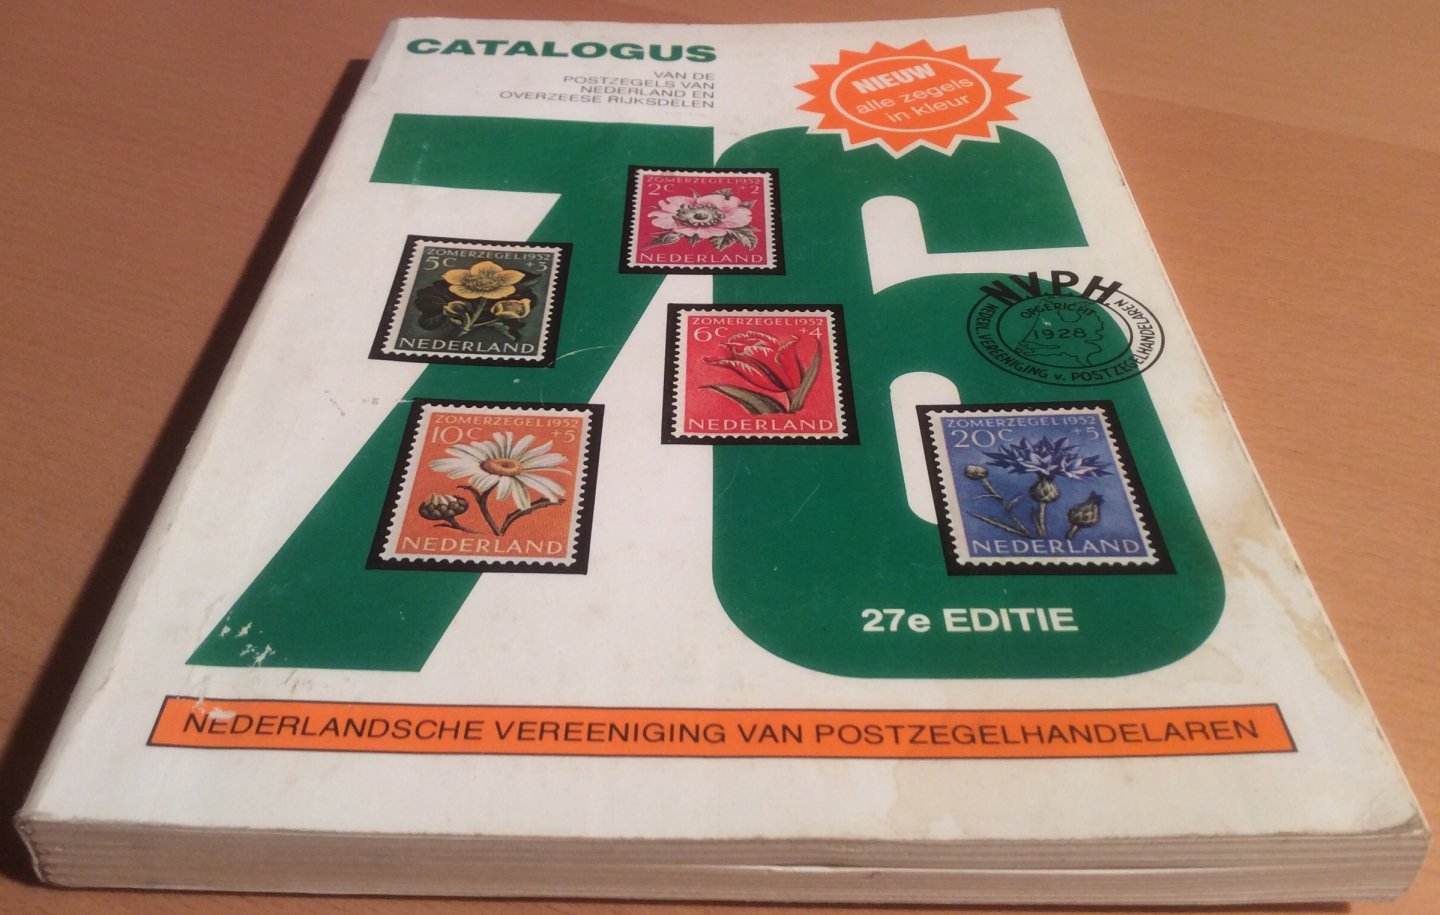 NVVP. Rietveld, S (Voorzitter) - Catalogus van de Postzegels van Nederland en Overzeese Rijksdelen. 1976